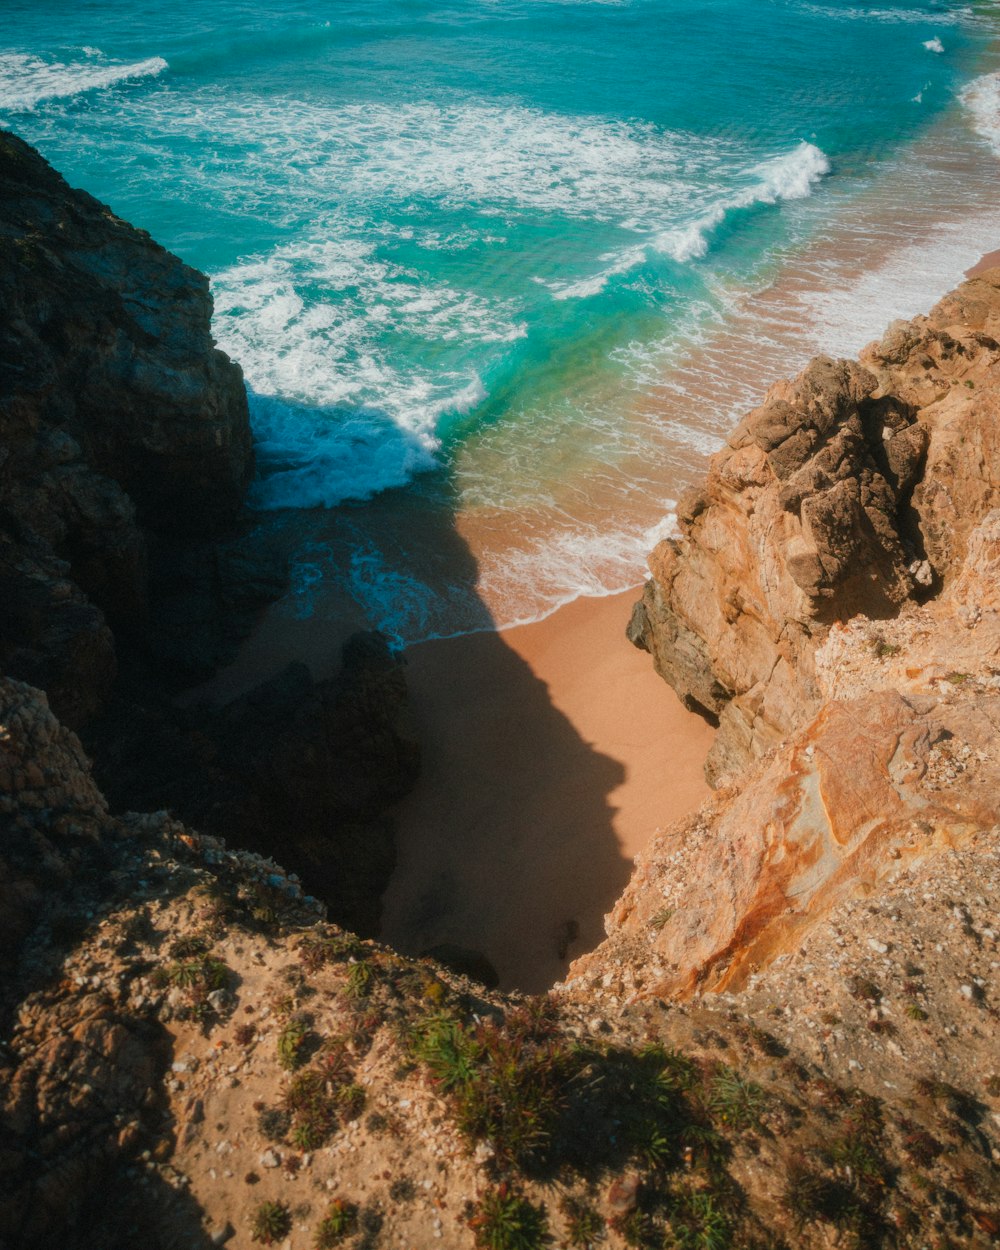 Une vue de l’océan depuis une falaise rocheuse